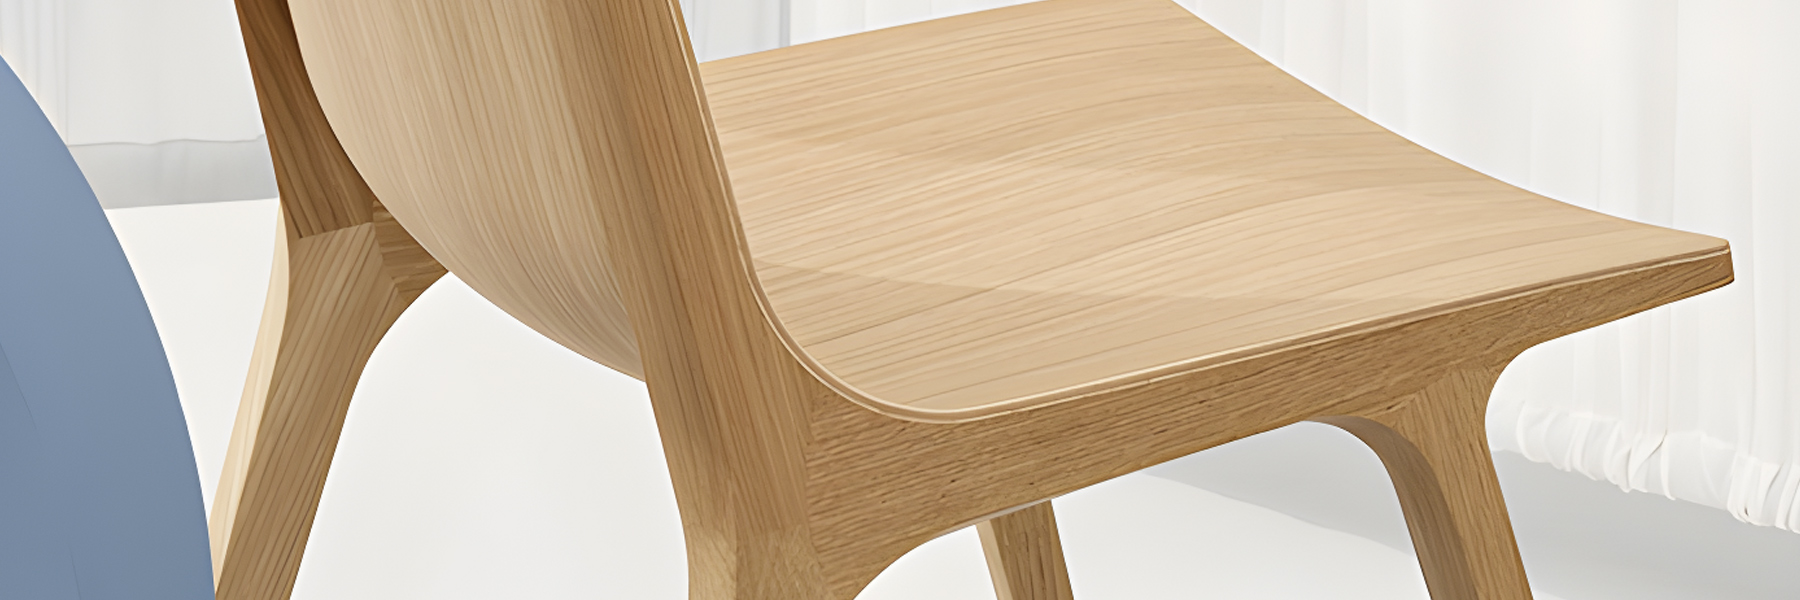 Drevené stoličky: Veľké porovnanie modelov